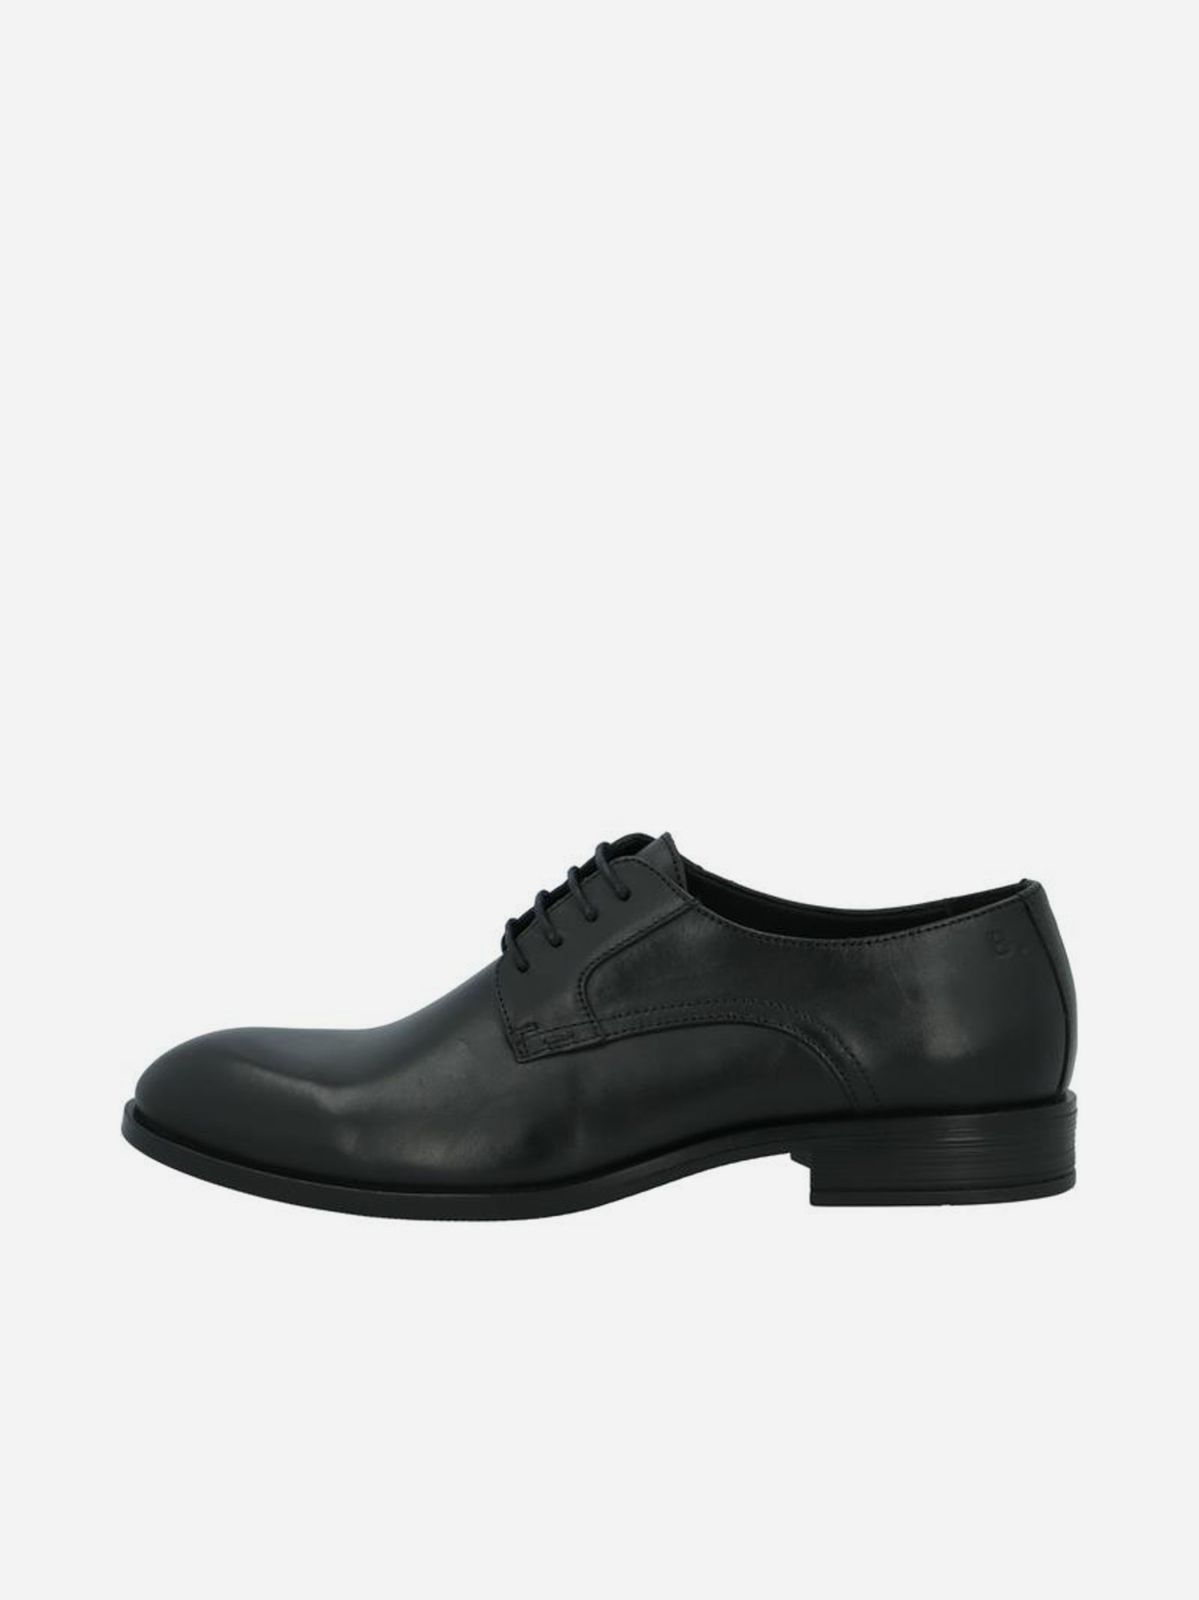  נעלי עור אלגנטיות / גברים של BIANCO